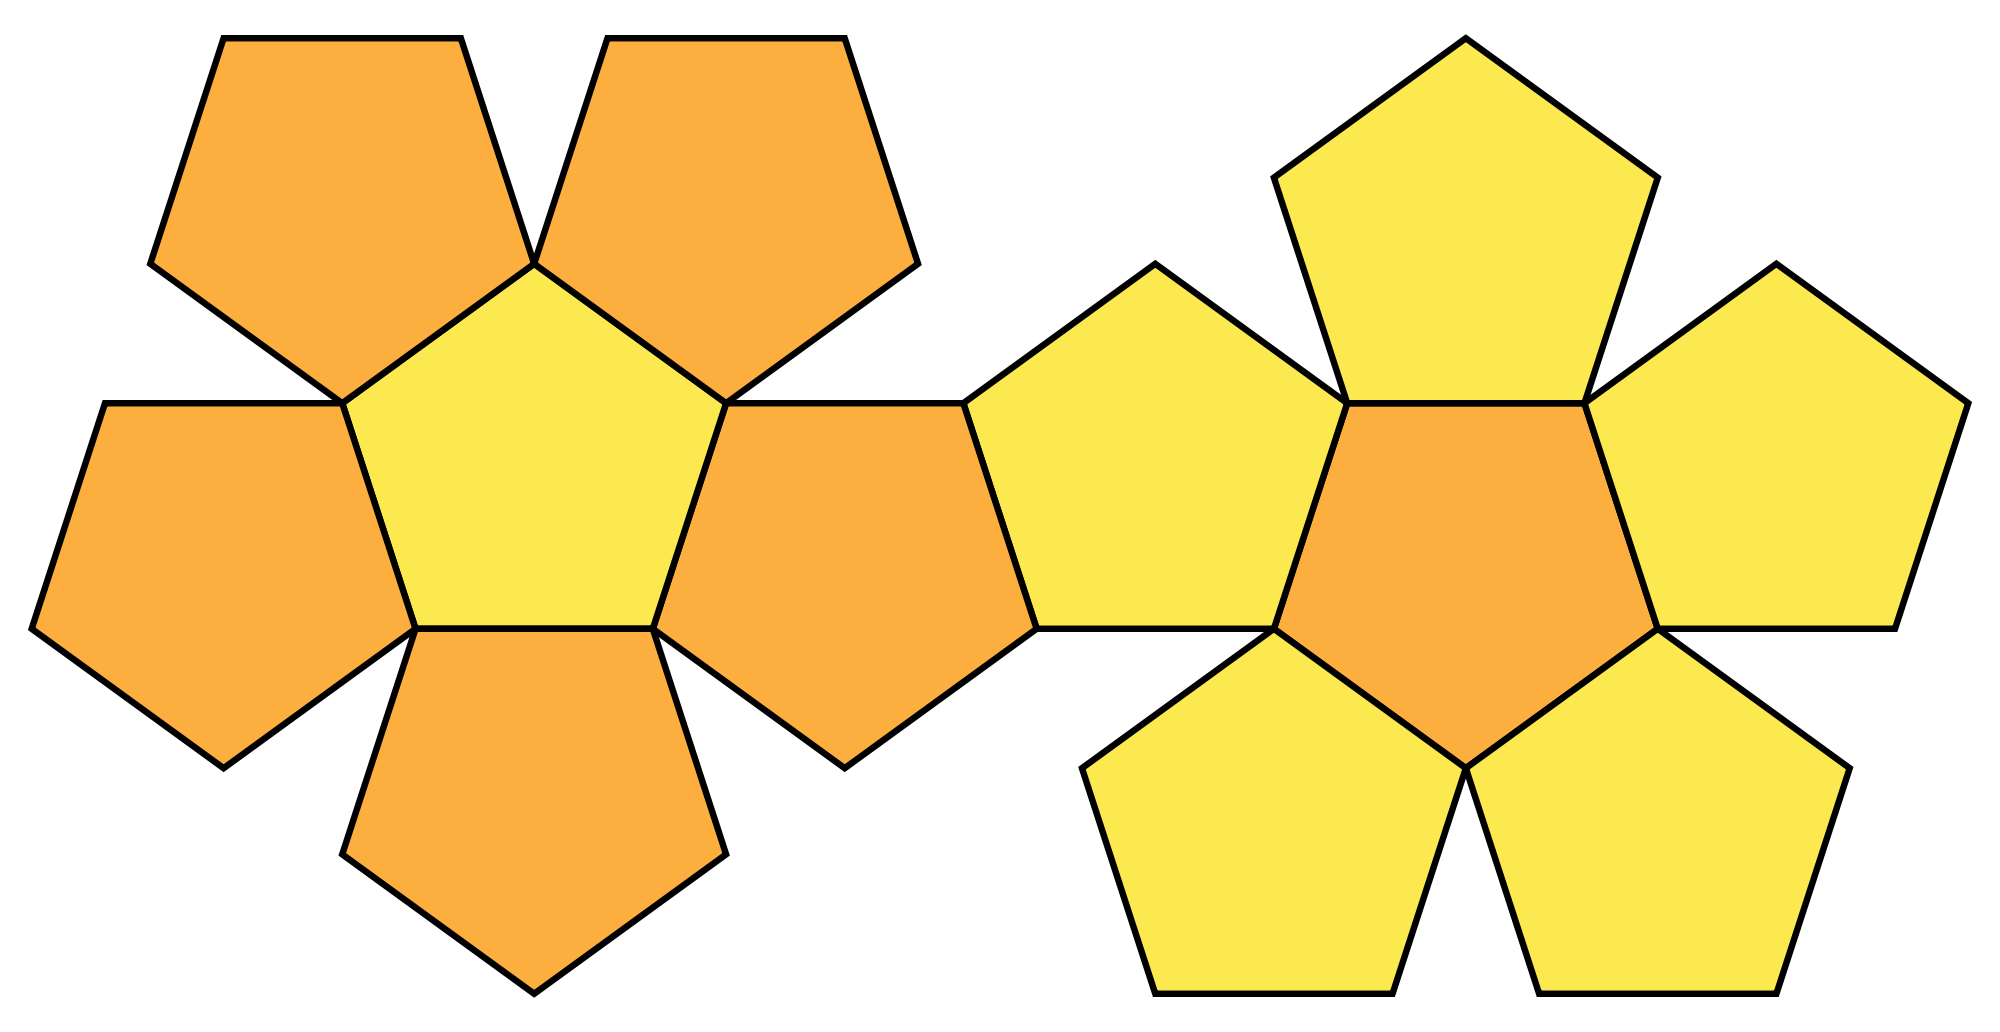 Пентаэдр пятигранник. Правильные многогранники додекаэдр. Развертки правильных многогранников додекаэдр. Развертка правильного додекаэдра.